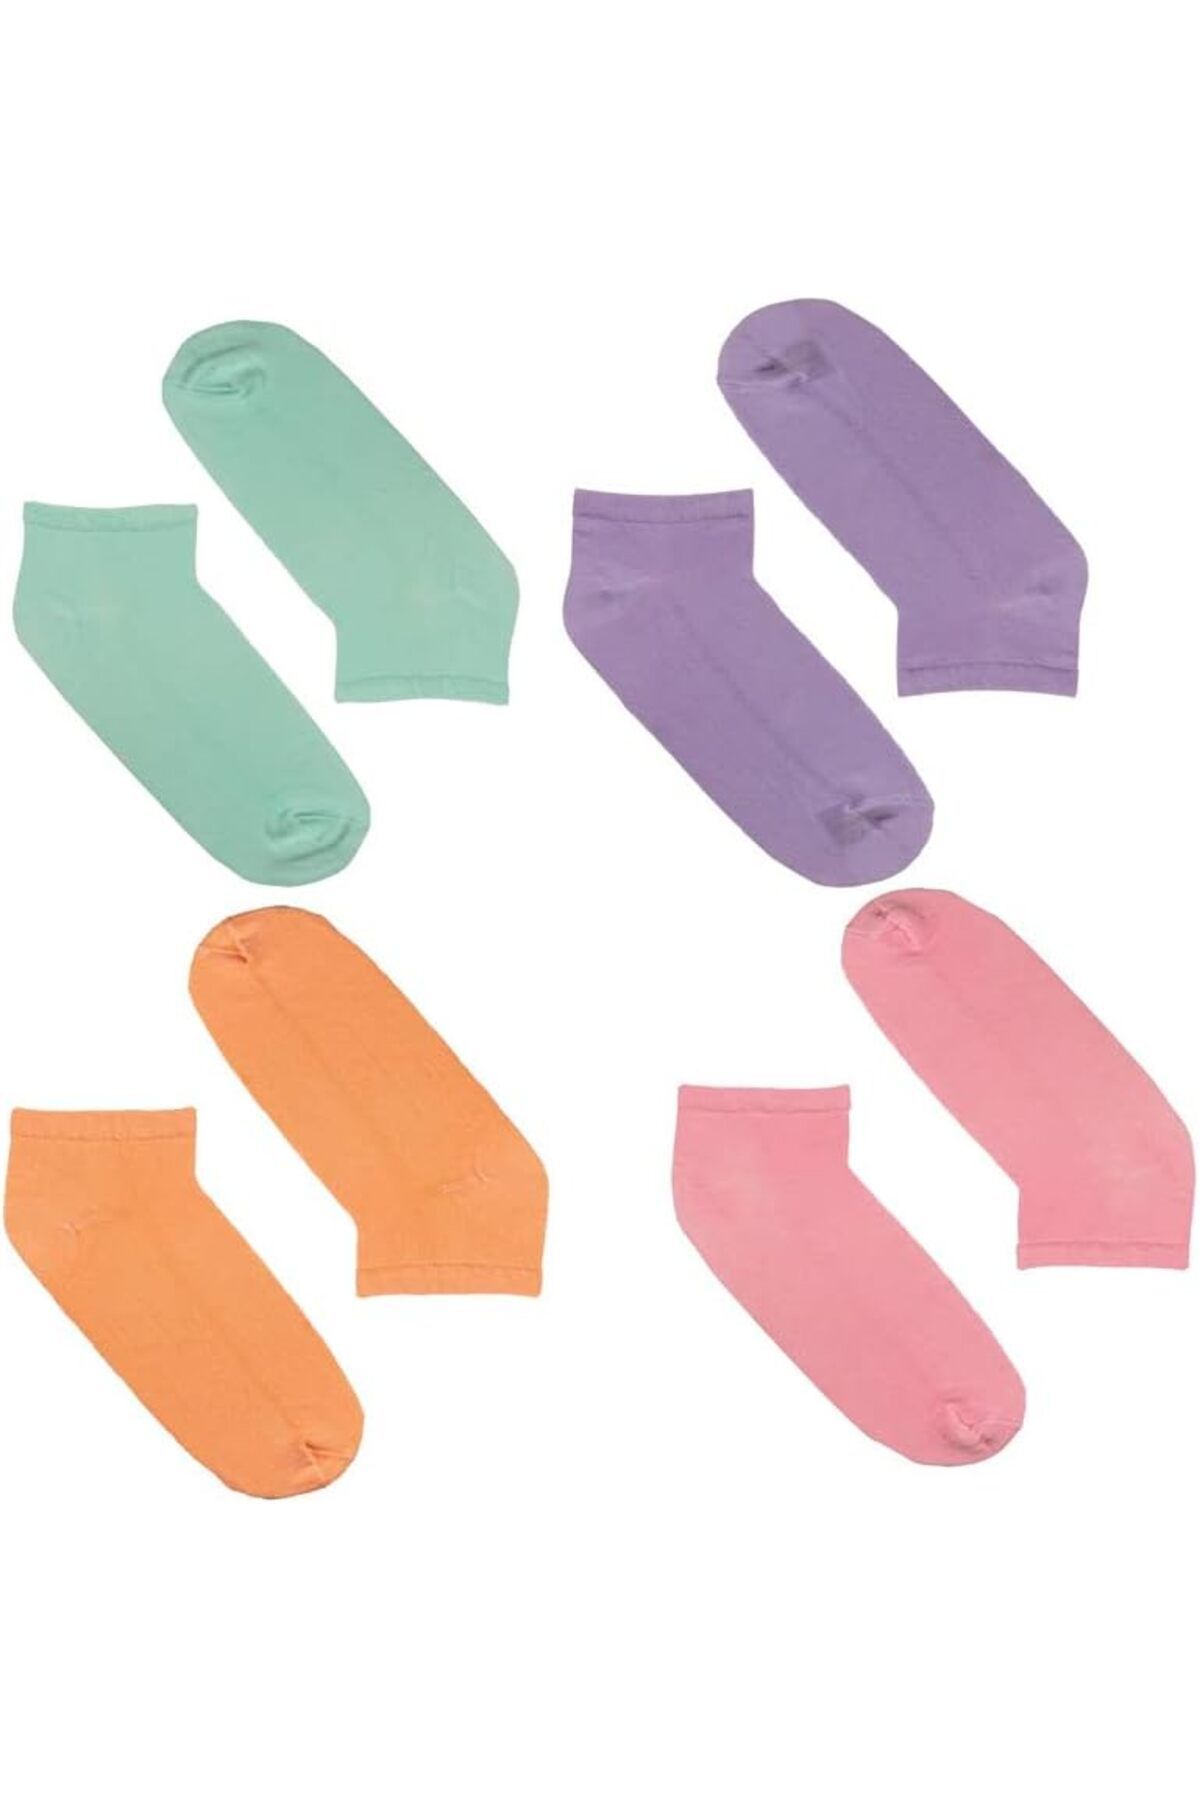 Genel Markalar Not Only Today Kaliteli Unisex Renkli Patik Günlük 4'lü Spor Çorap Seti